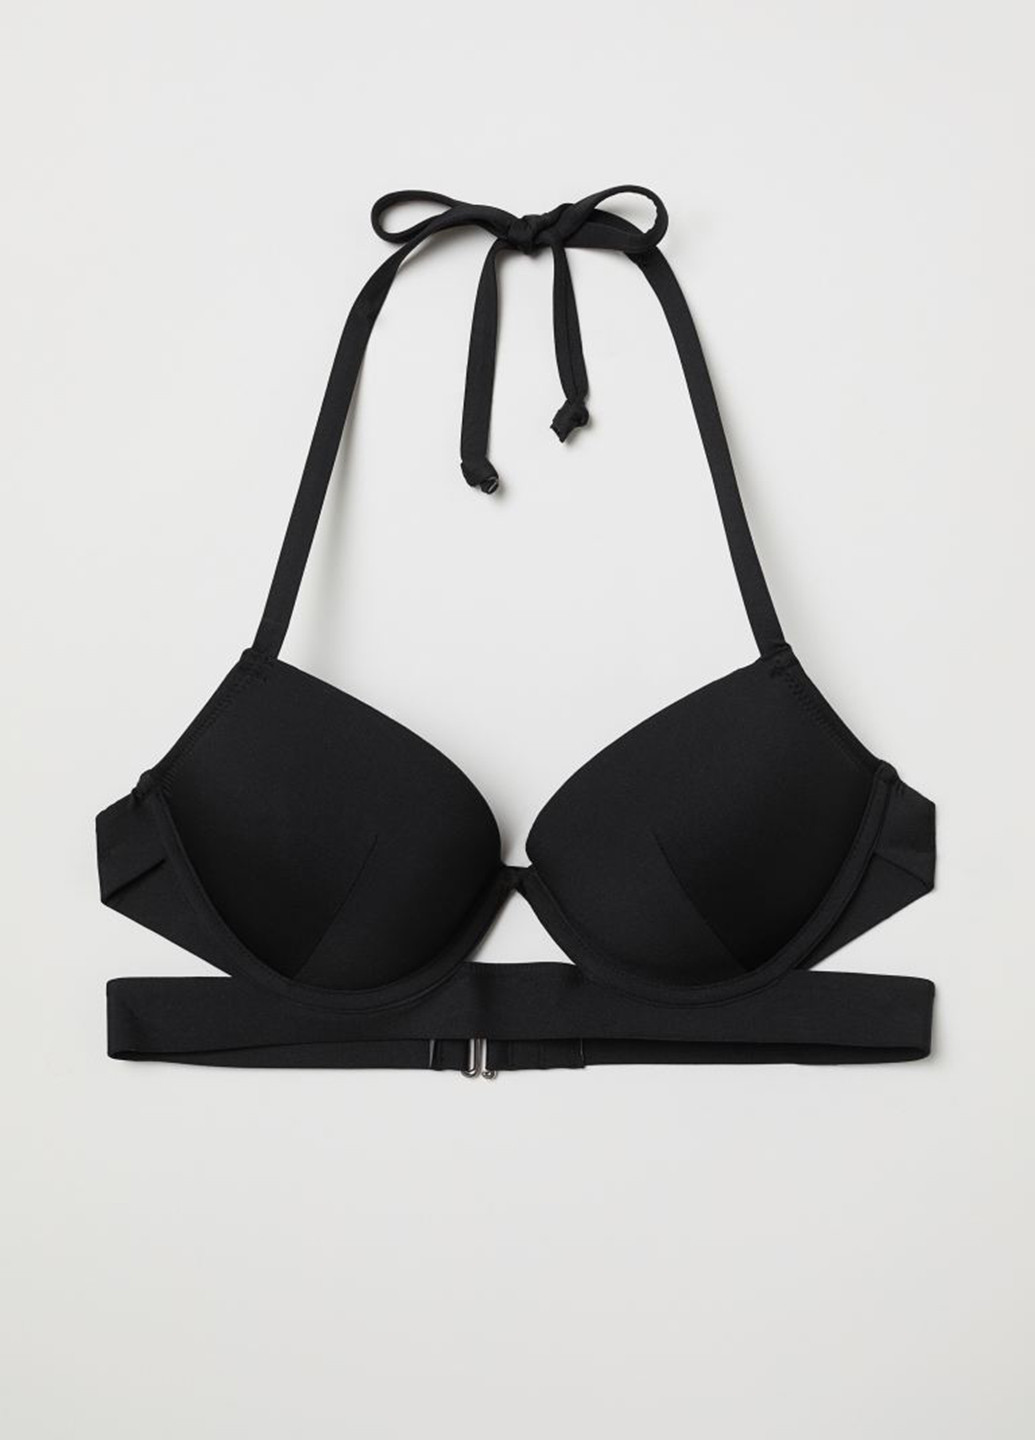 Купальный лиф H&M бикини однотонный чёрный пляжный трикотаж, полиамид